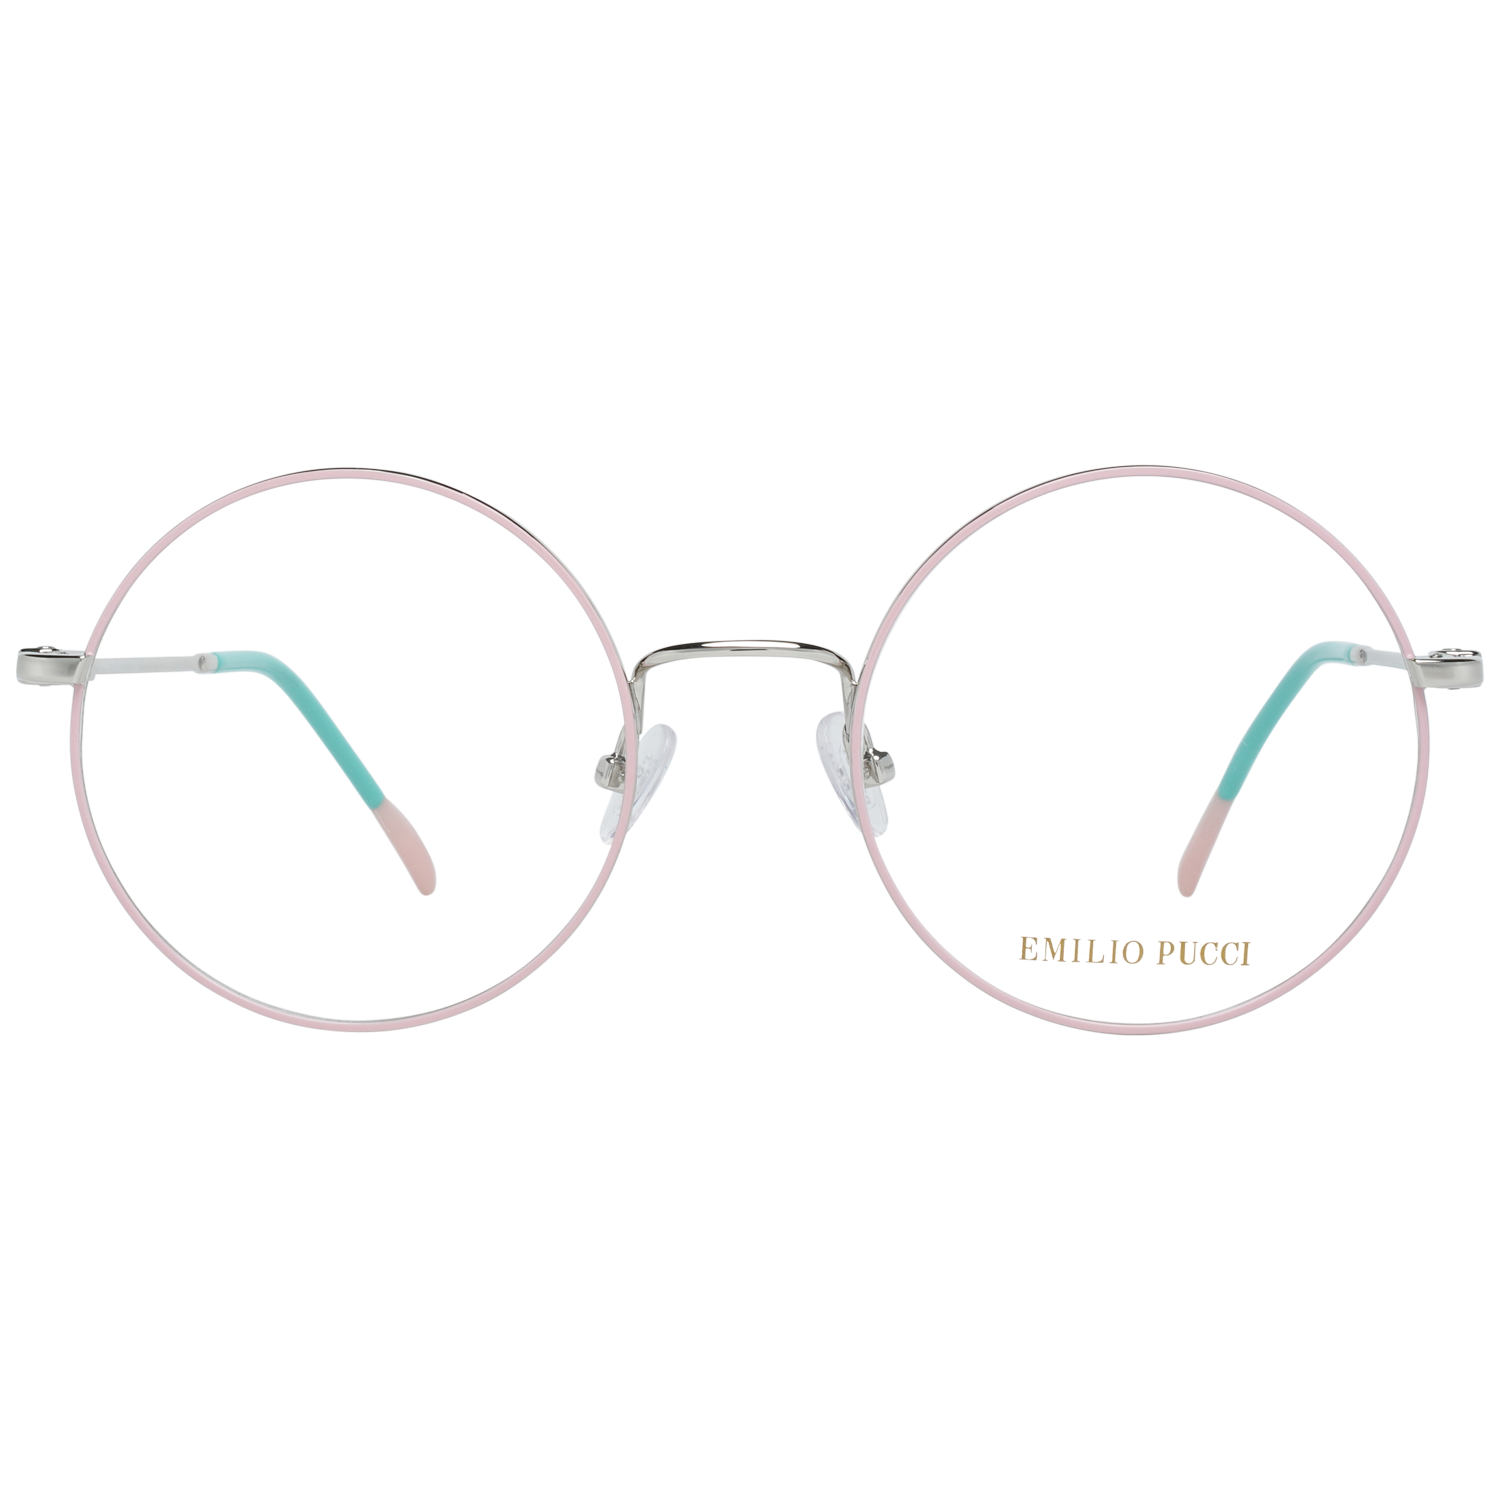 Emilio Pucci Frames Emilio Pucci Optical Frame EP5088 020 51 Eyeglasses Eyewear UK USA Australia 